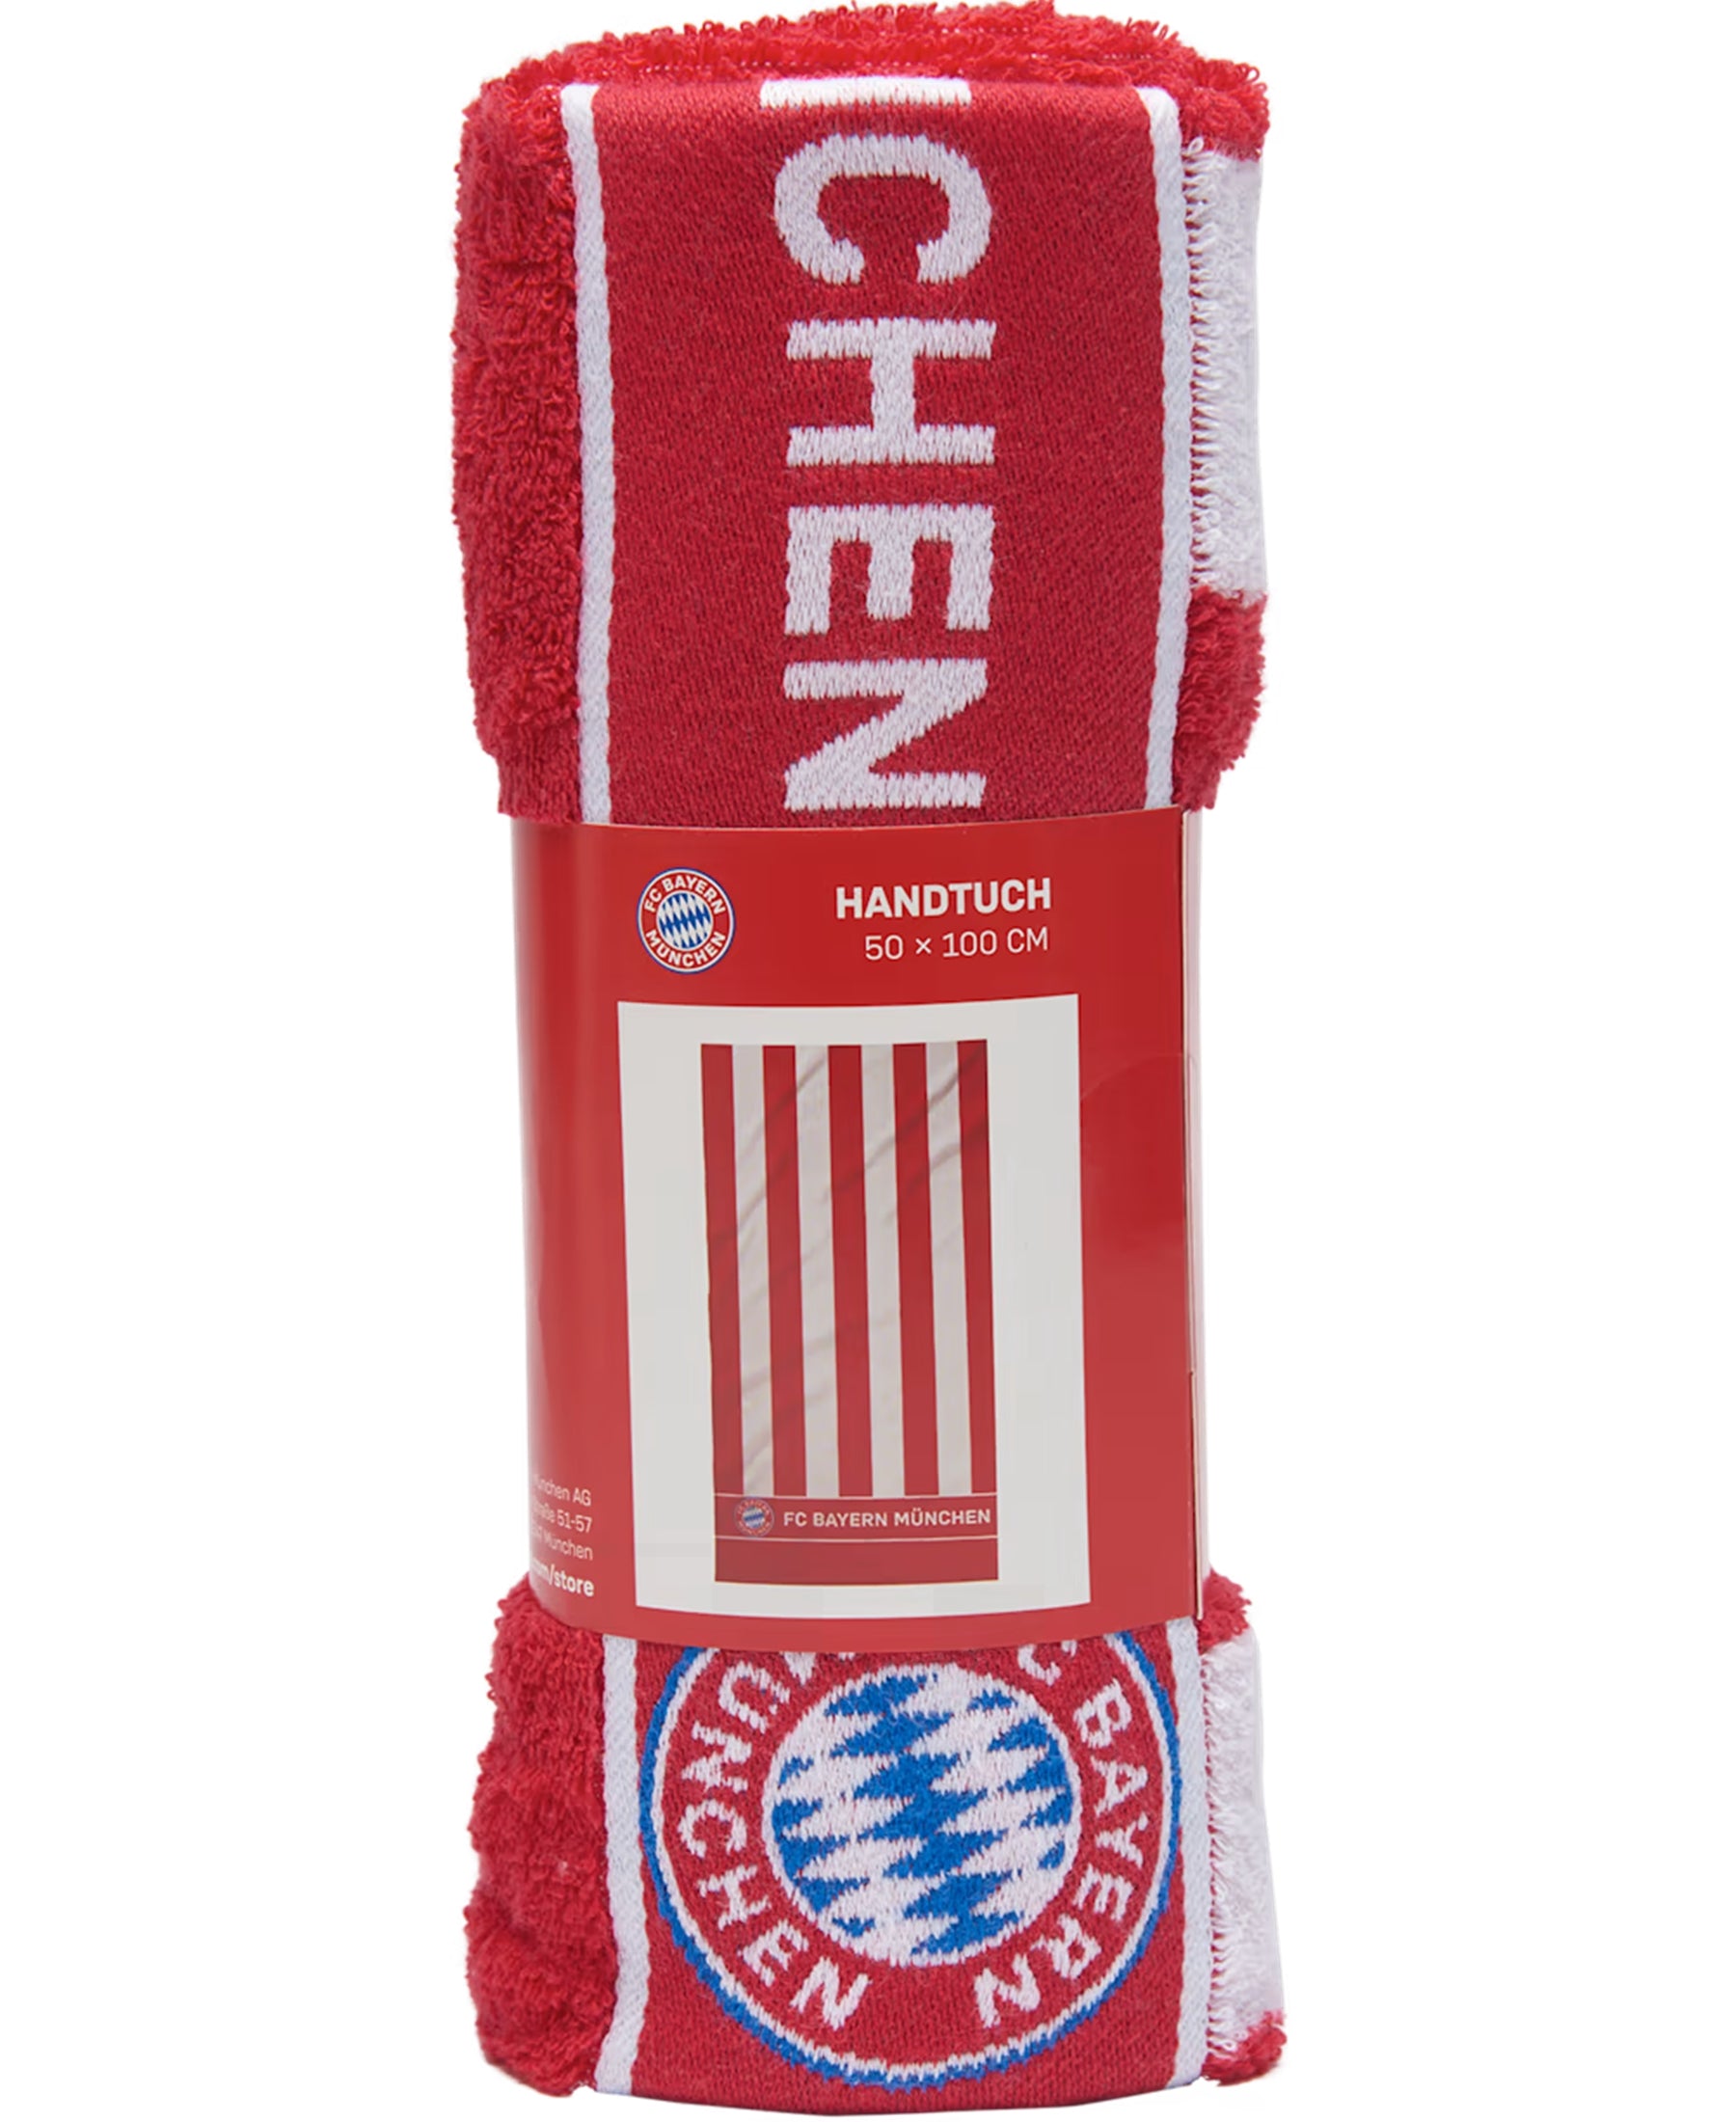 Das FC Bayern München FCB Handtuch (28369) ist ein Muss für alle Fans des Vereins. Mit dem gestickten Vereinslogo ist es nicht nur praktisch, sondern auch ein echter Hingucker im Badezimmer. Dieses hochwertige Handtuch ist saugfähig und strapazierfähig. Holen Sie sich jetzt das offizielle Fanartikel bei SHOP4TEAMSPORT und zeigen Sie Ihre Unterstützung für den FC Bayern München.